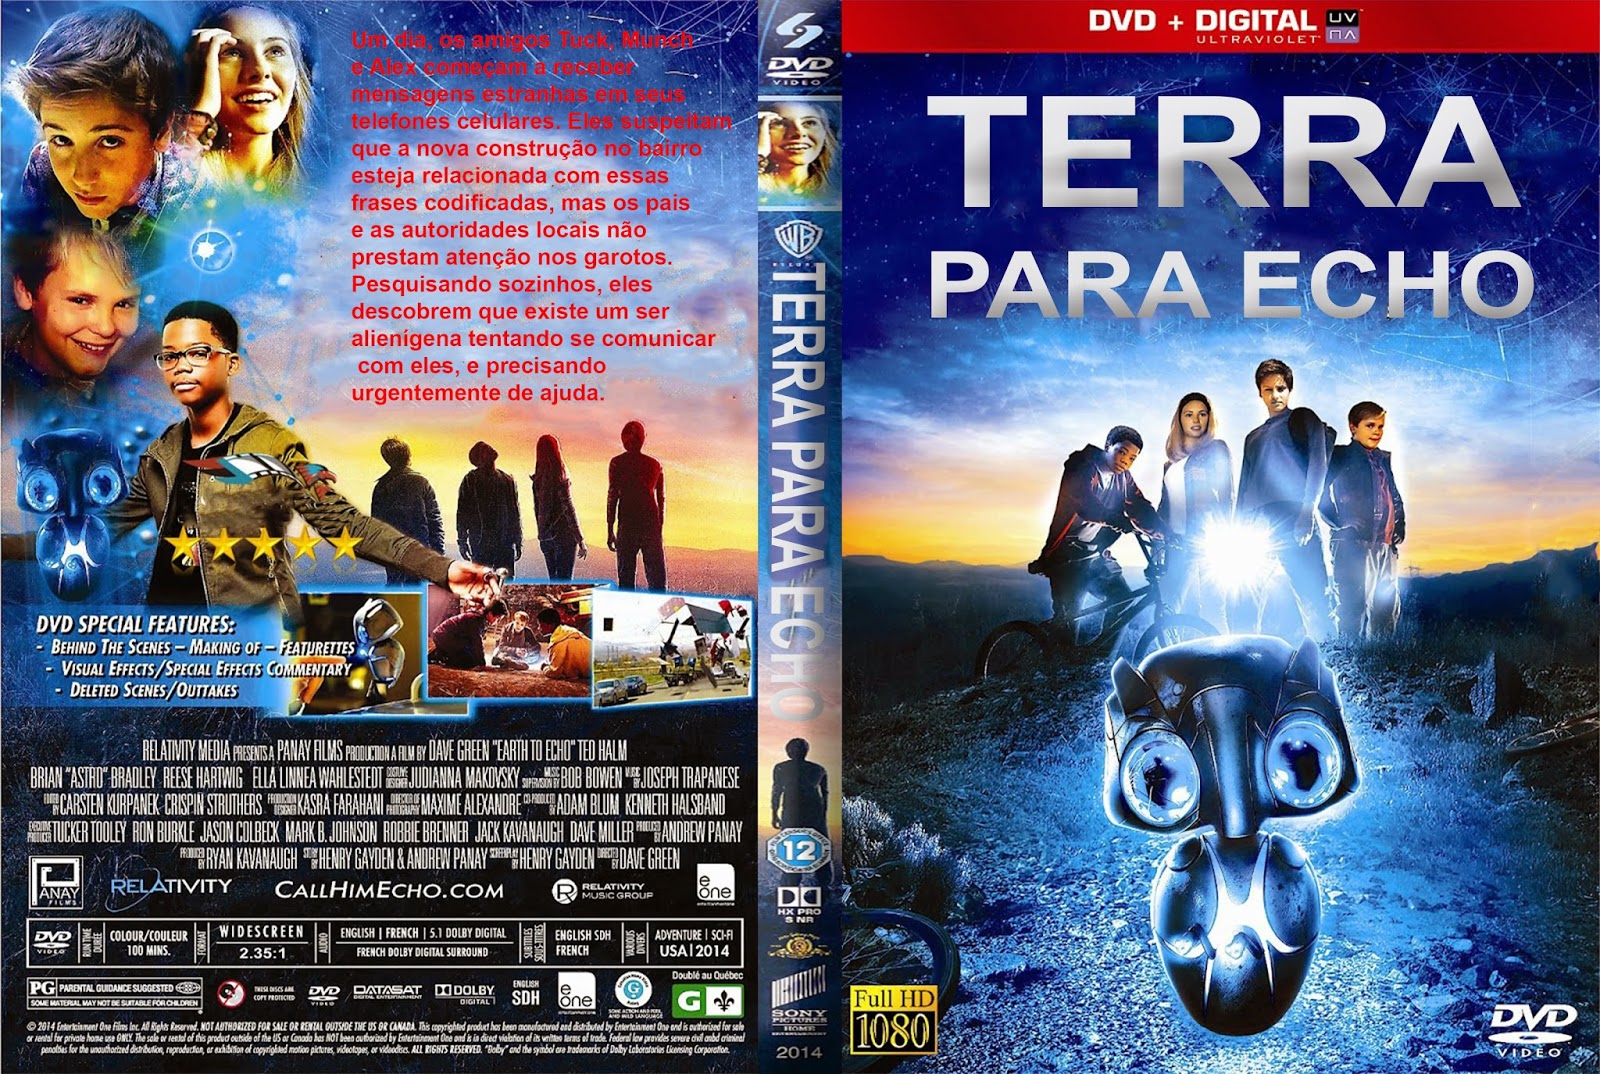 TerraparaEcho